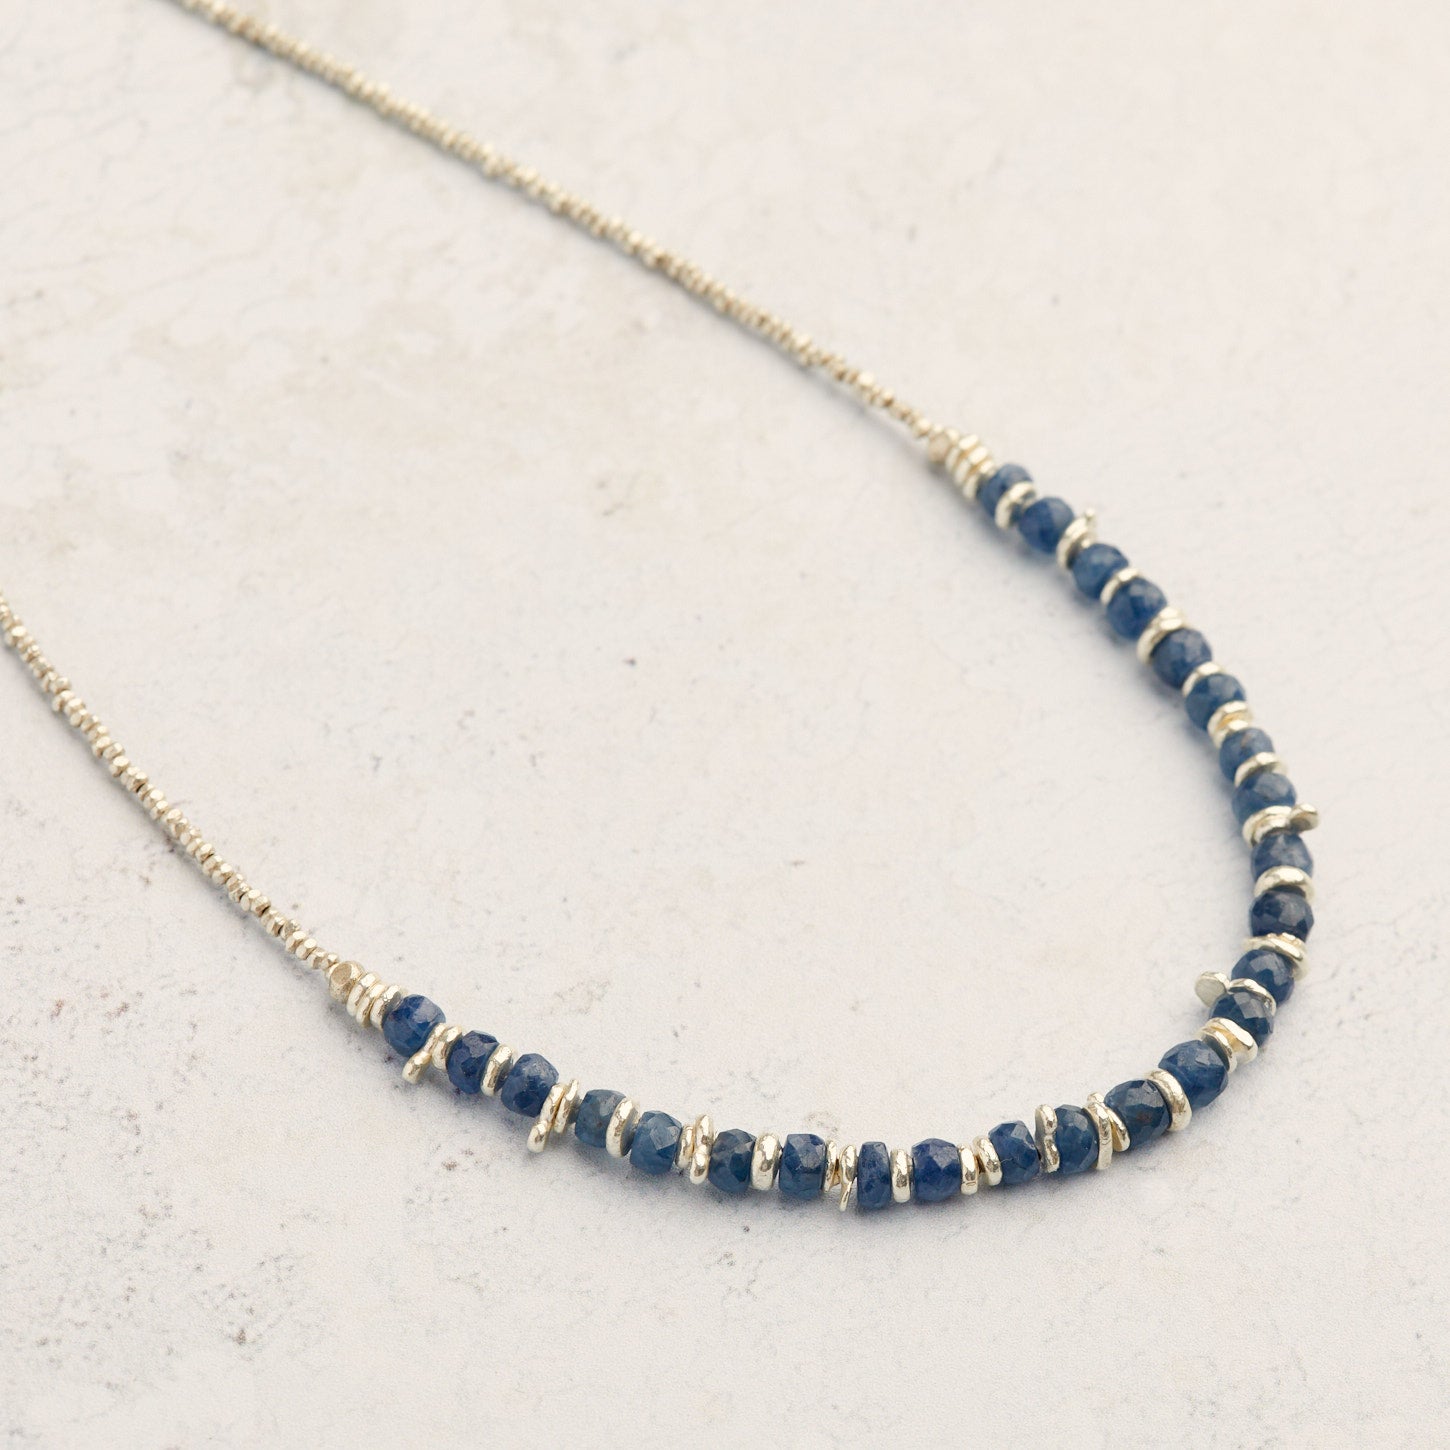 Celestial Blue Sapphire Necklace